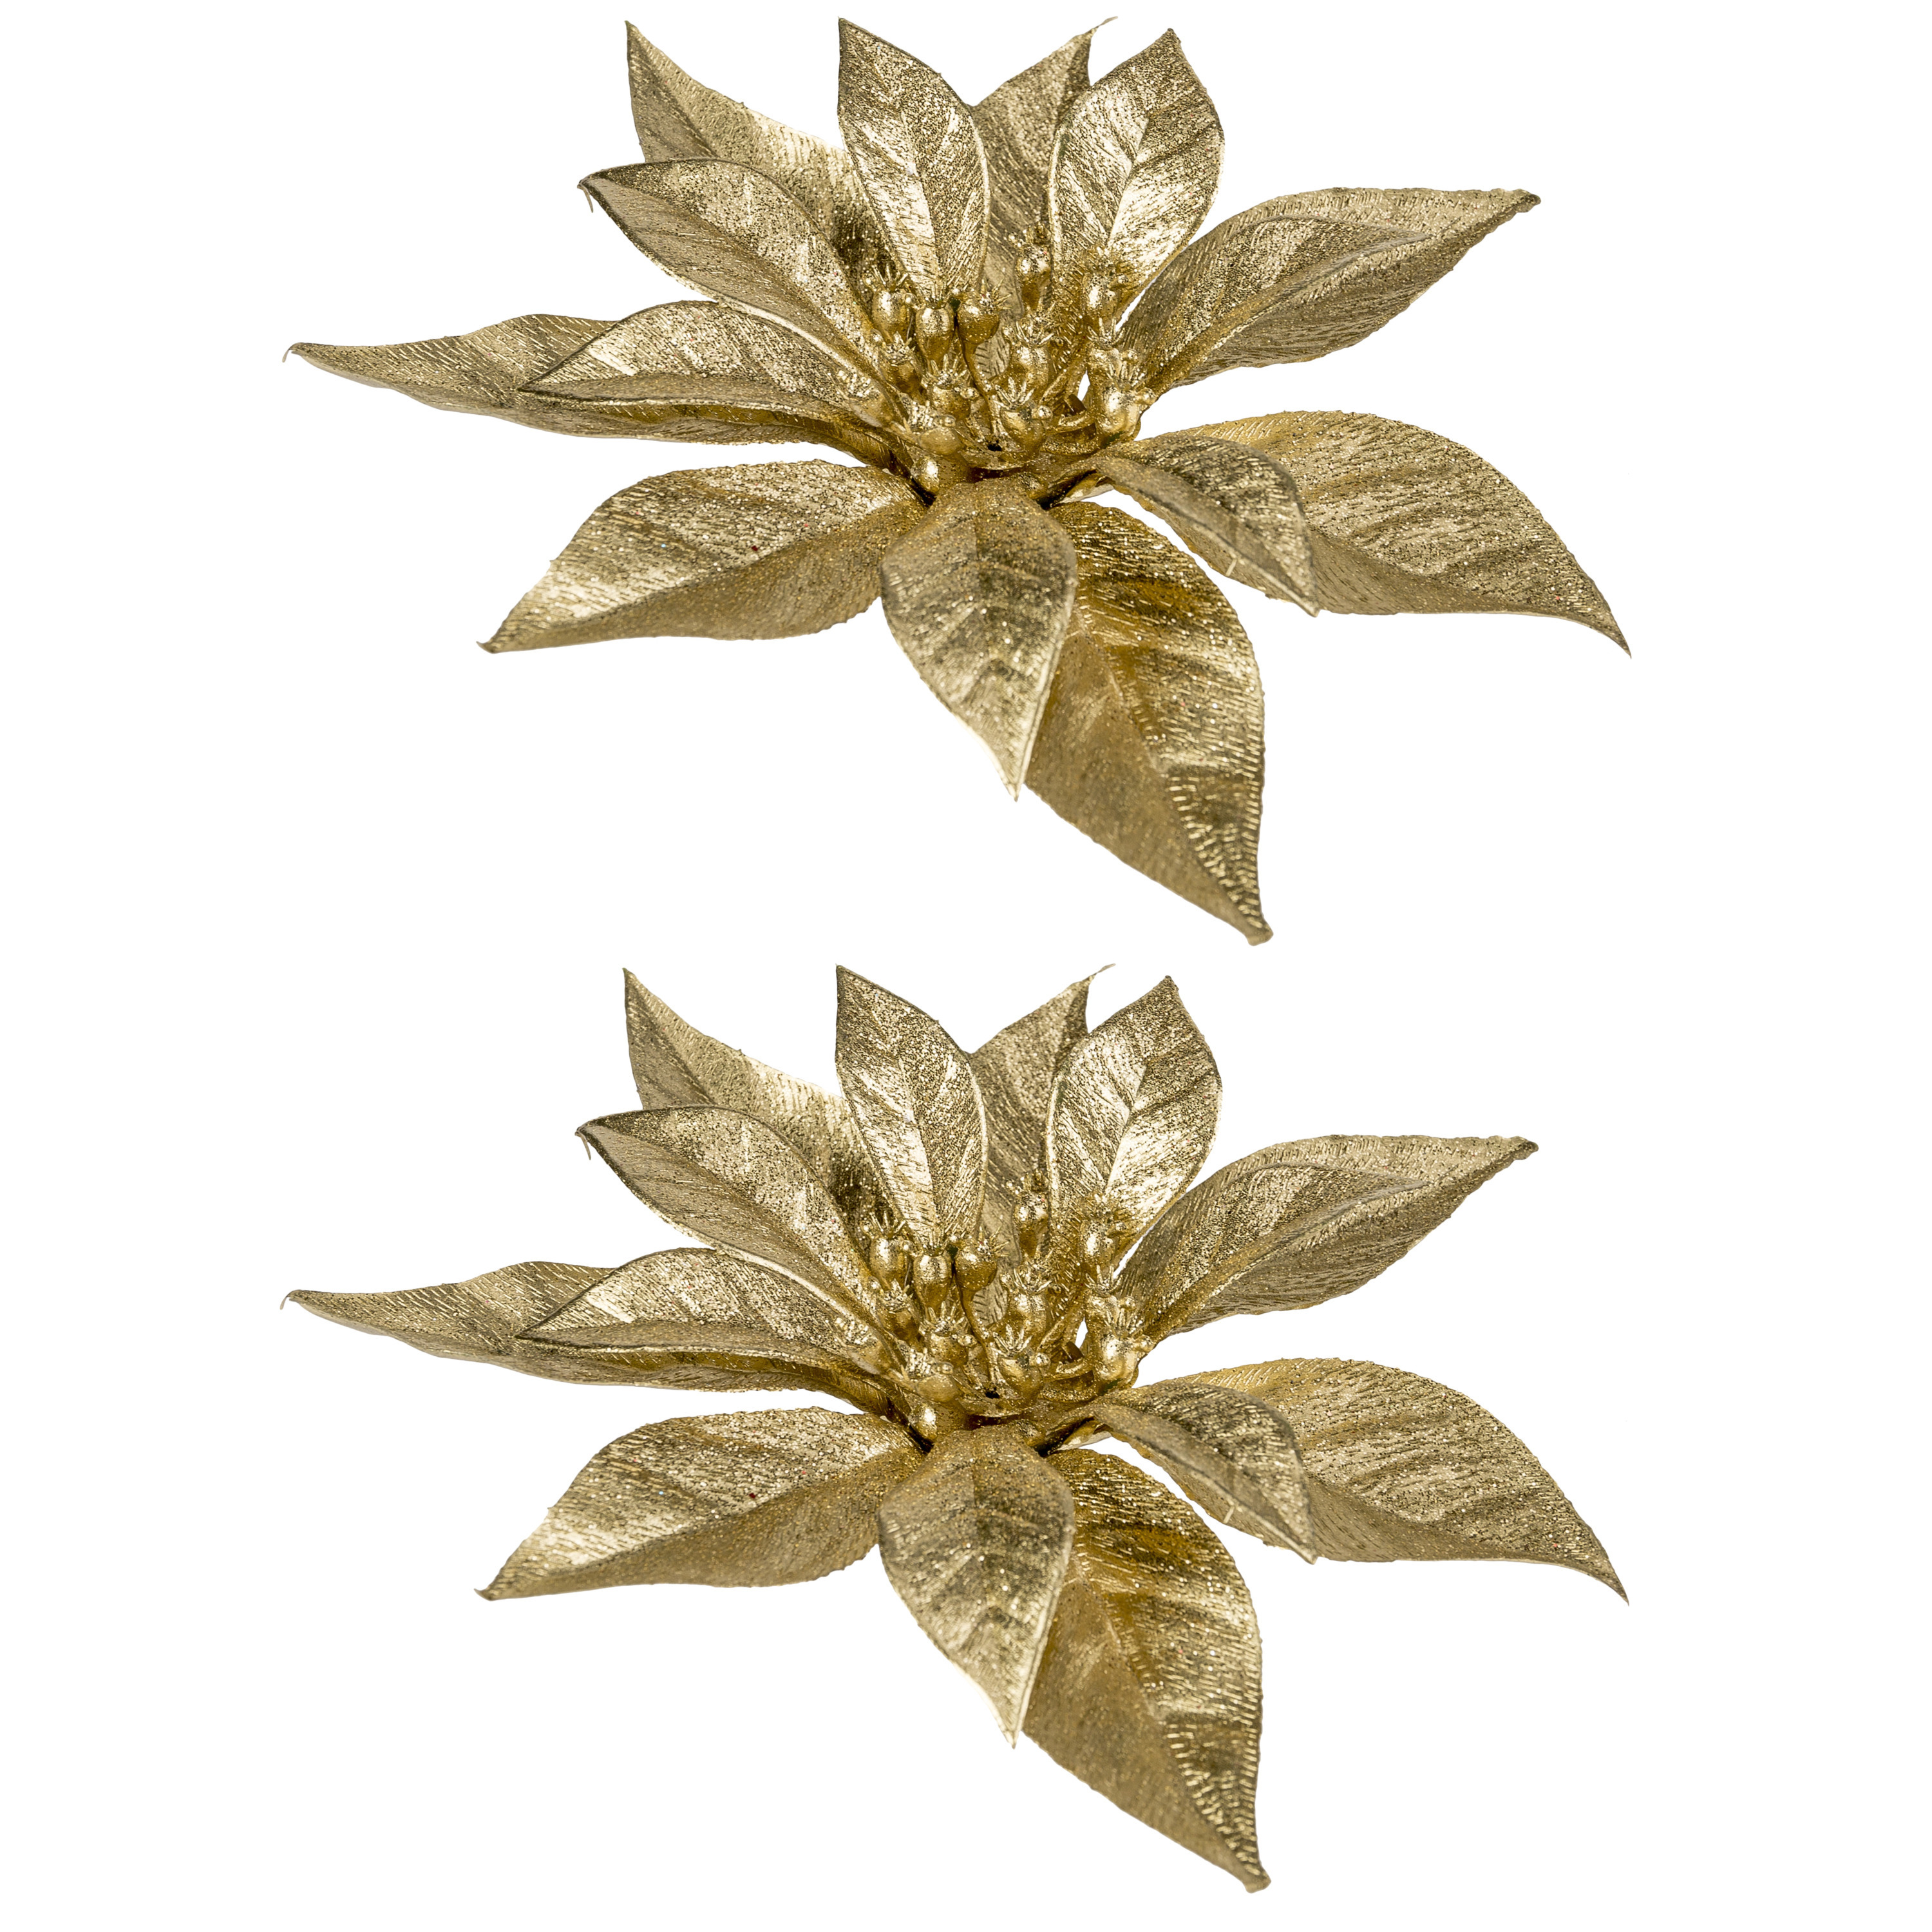 Dronken worden composiet alias 6x stuks decoratie bloemen kerstster goud glitter op clip 18 cm bij kerst -artikelen.nl.